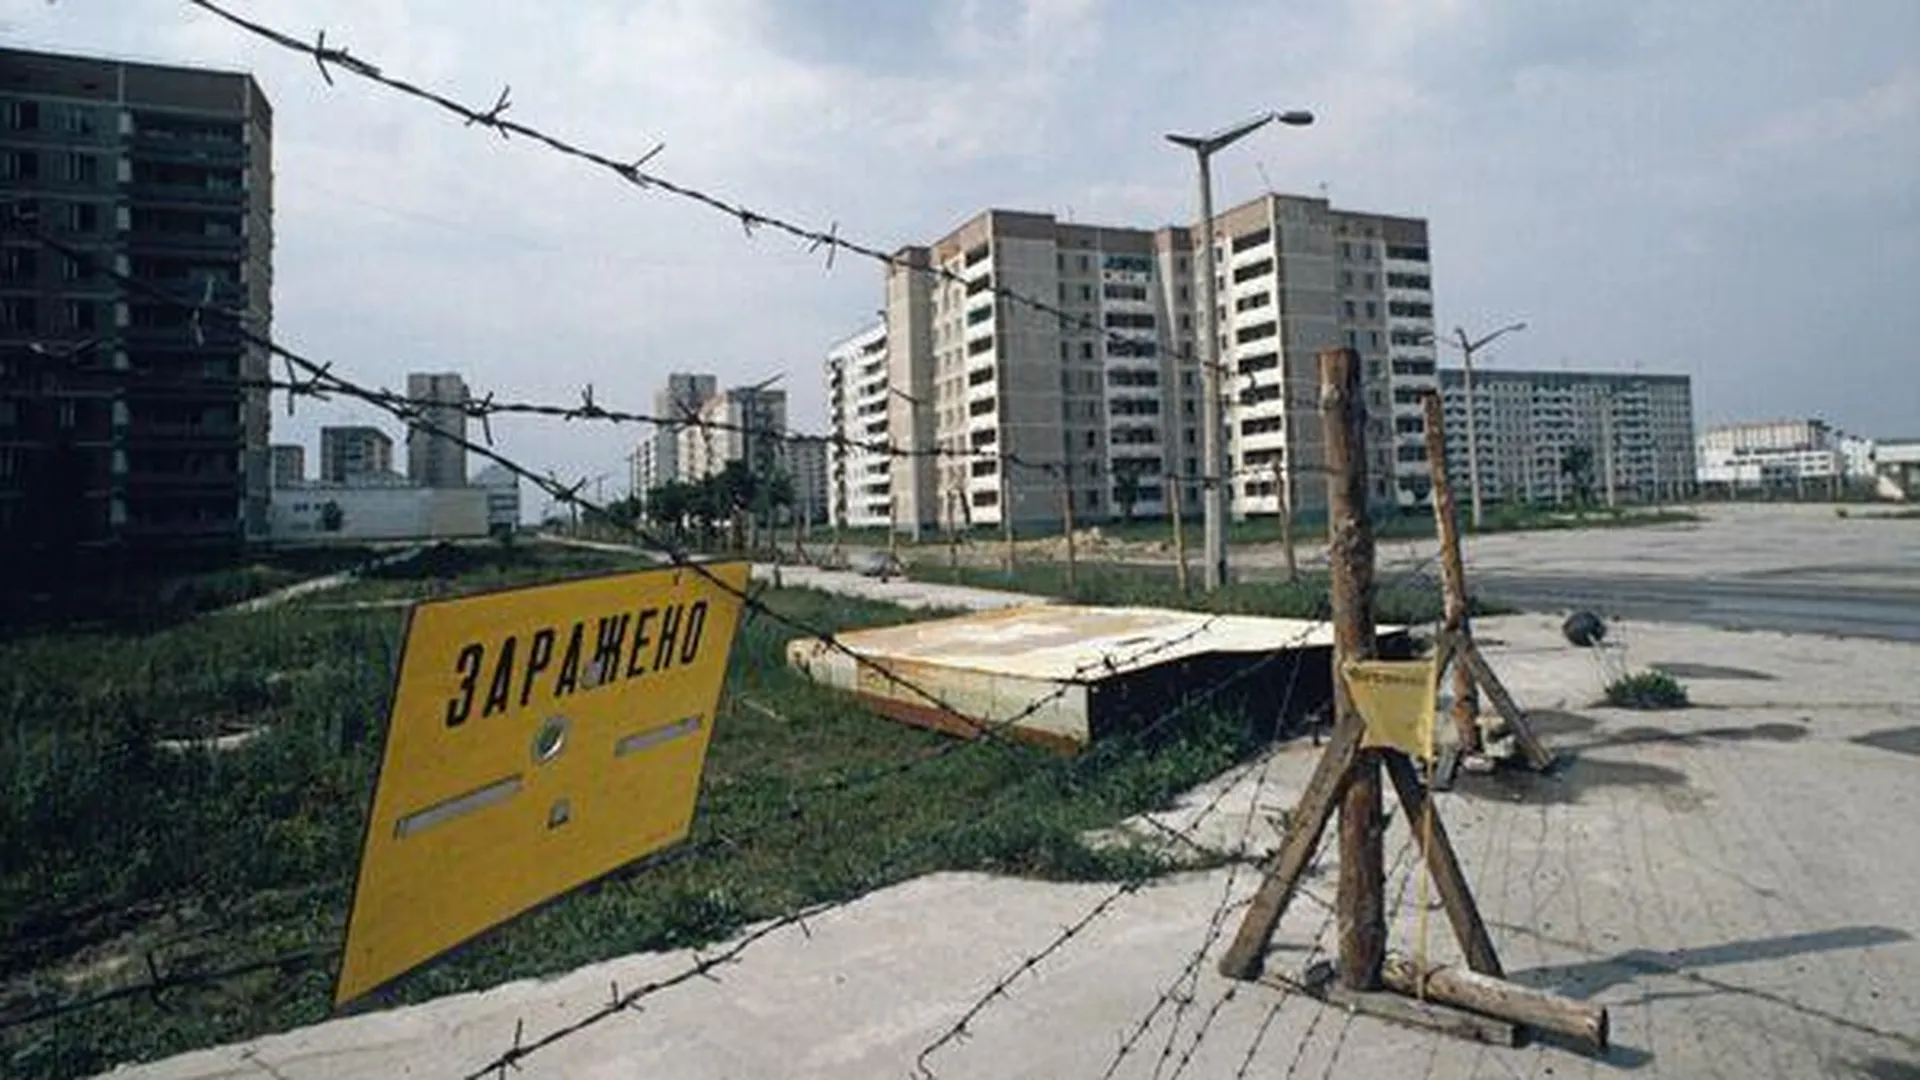 Применение Украиной «грязной бомбы» обернется вторым Чернобылем